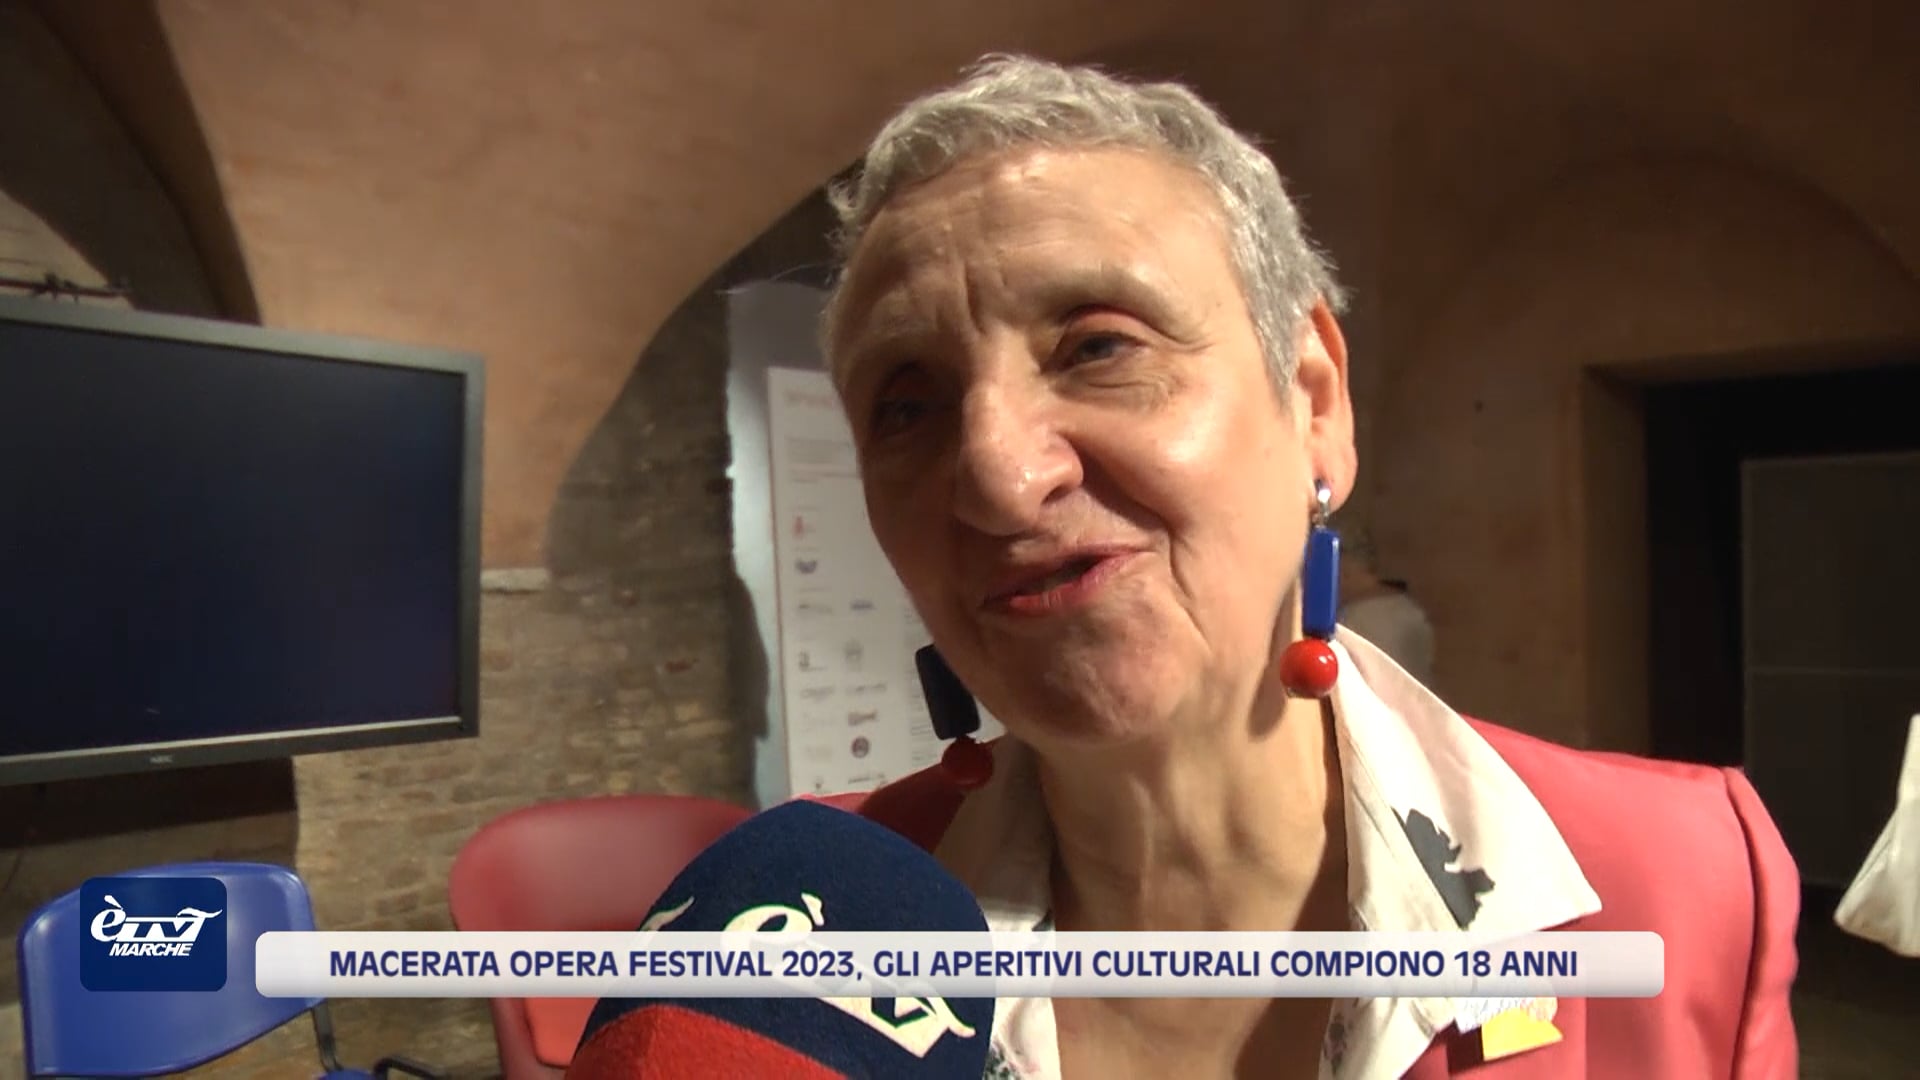 Macerata Opera Festival 2023, gli Aperitivi Culturali compiono18 anni - VIDEO